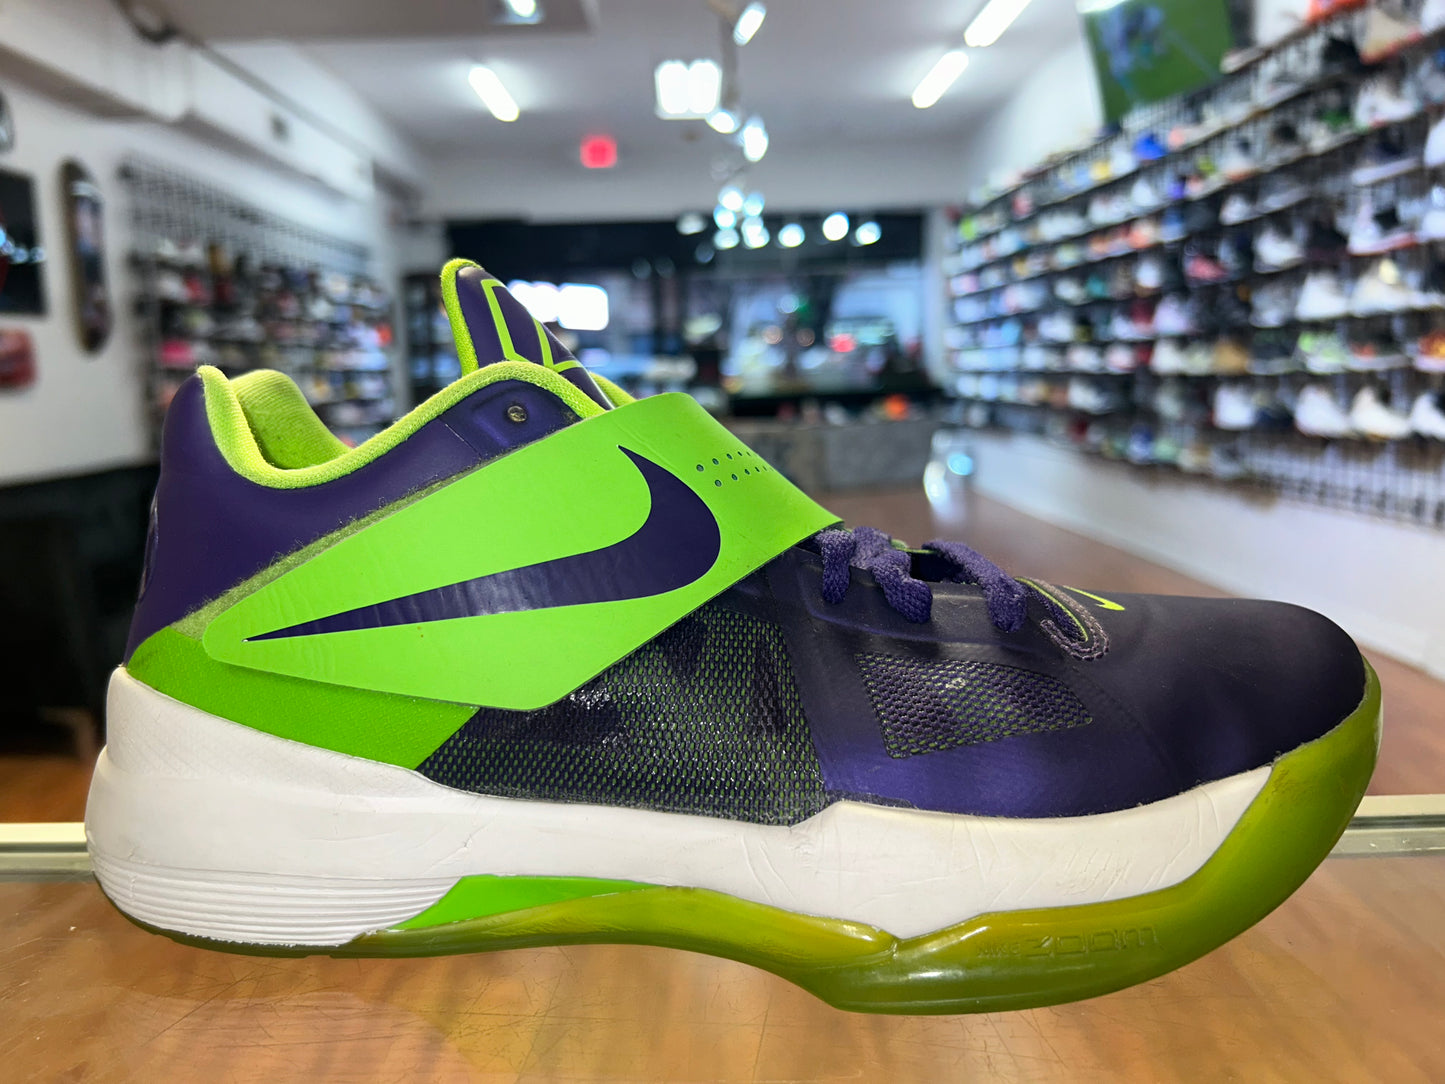 Size 7.5 KD 4 Nike ID "Hulk" (MAMO)